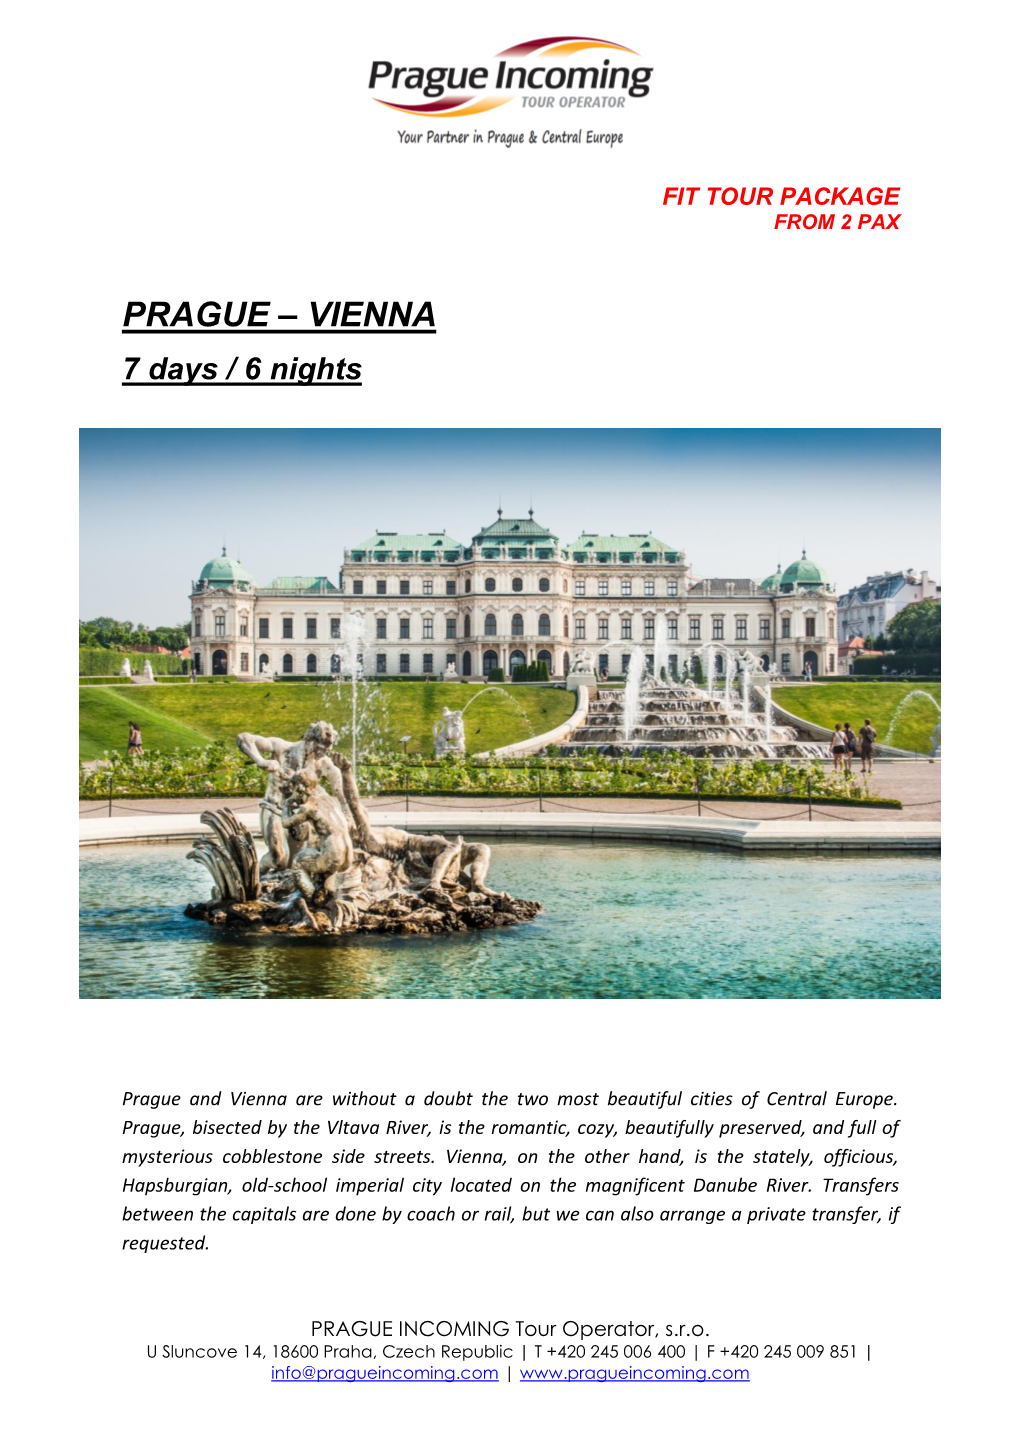 PRAGUE – VIENNA 7 Days / 6 Nights